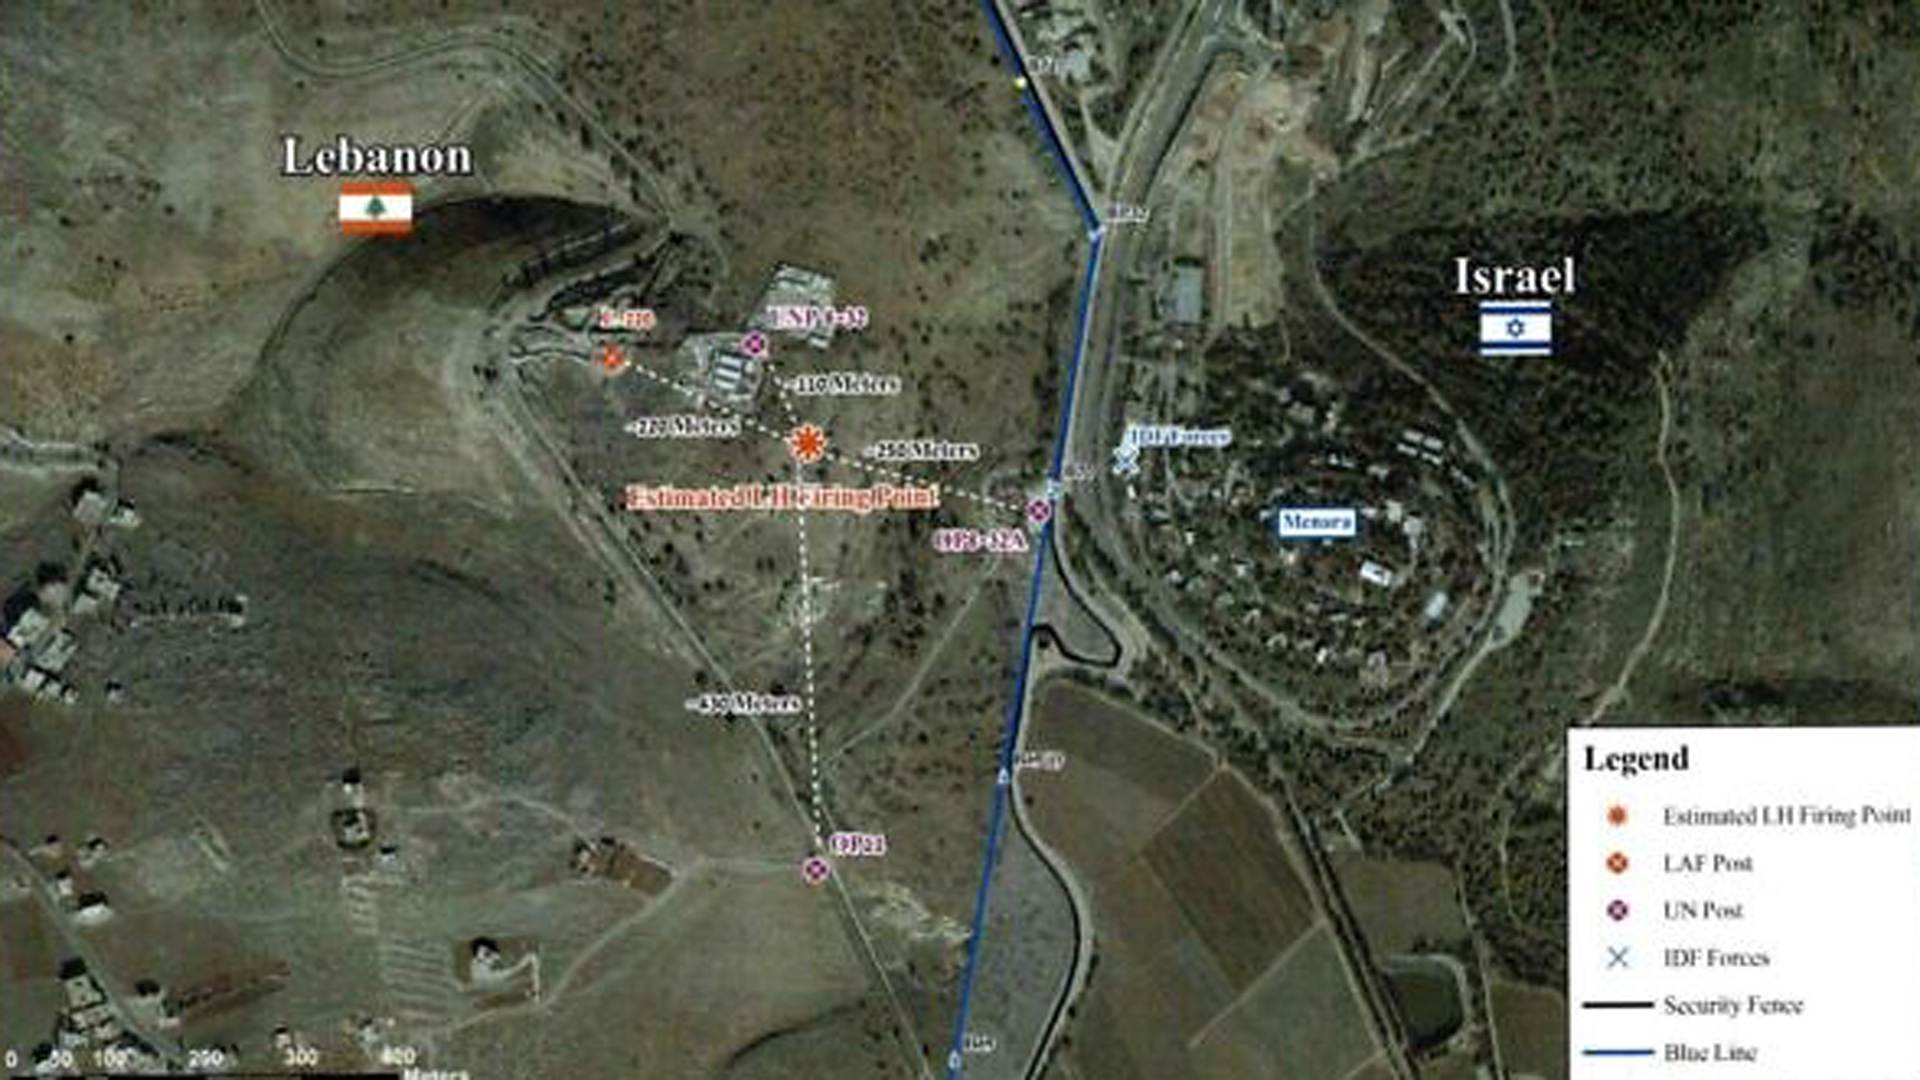 Etwas unscharfer Scan des im Brief beigefügten Satellitenbildes: Die orangen Punkte sollen die Schussposition darstellen, die violetten Punkte die UNIFIL-Stellungen